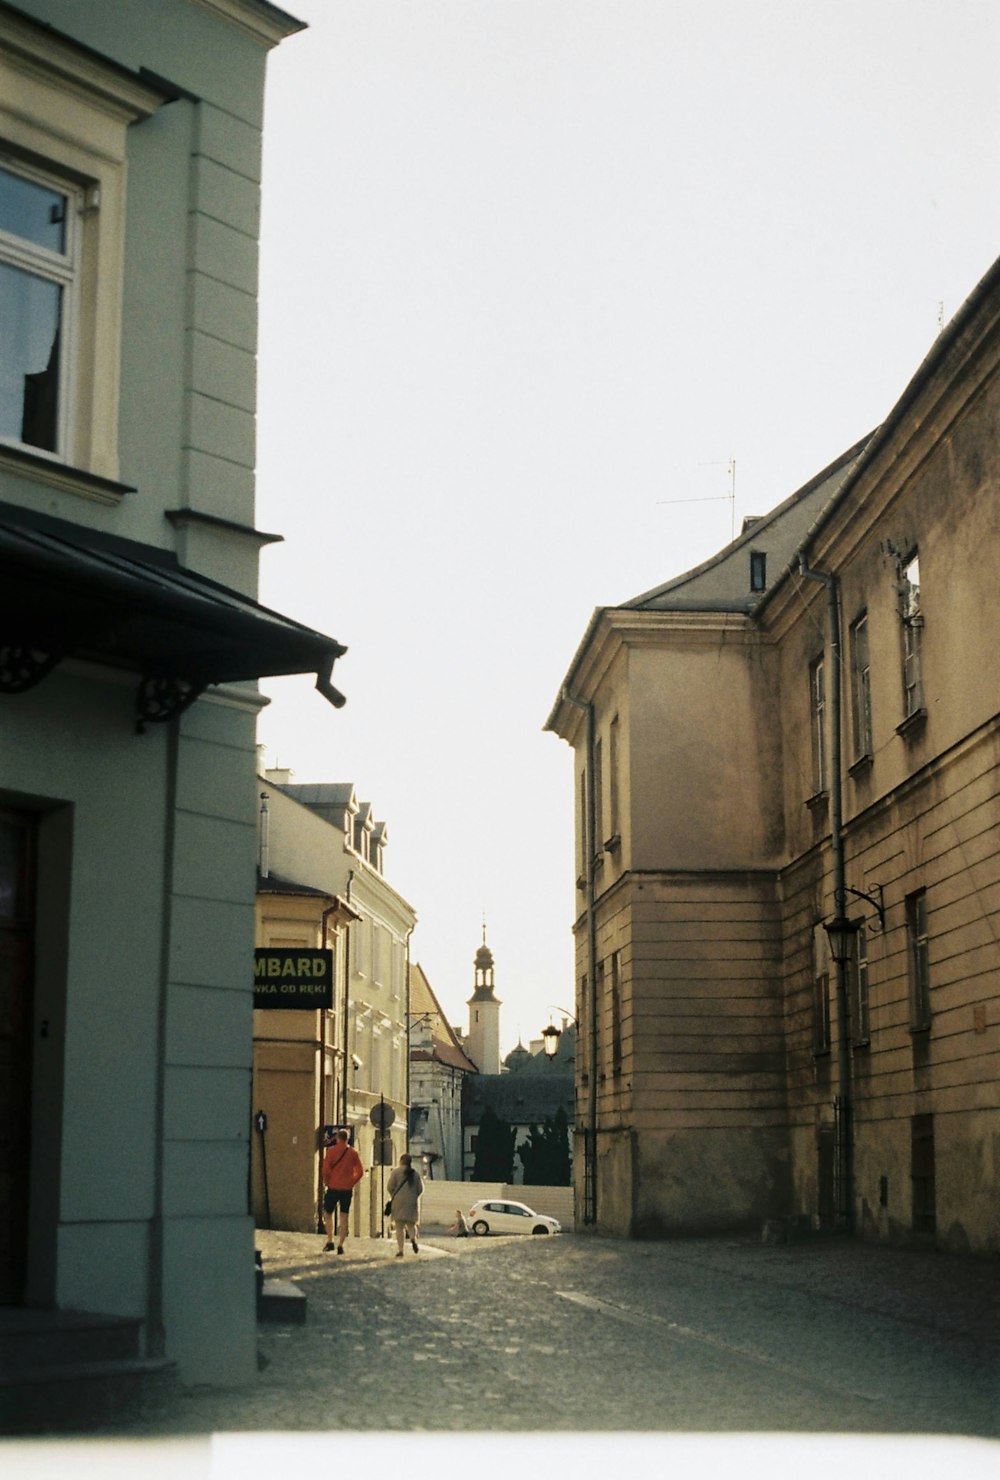 Una persona caminando por una calle al lado de edificios altos